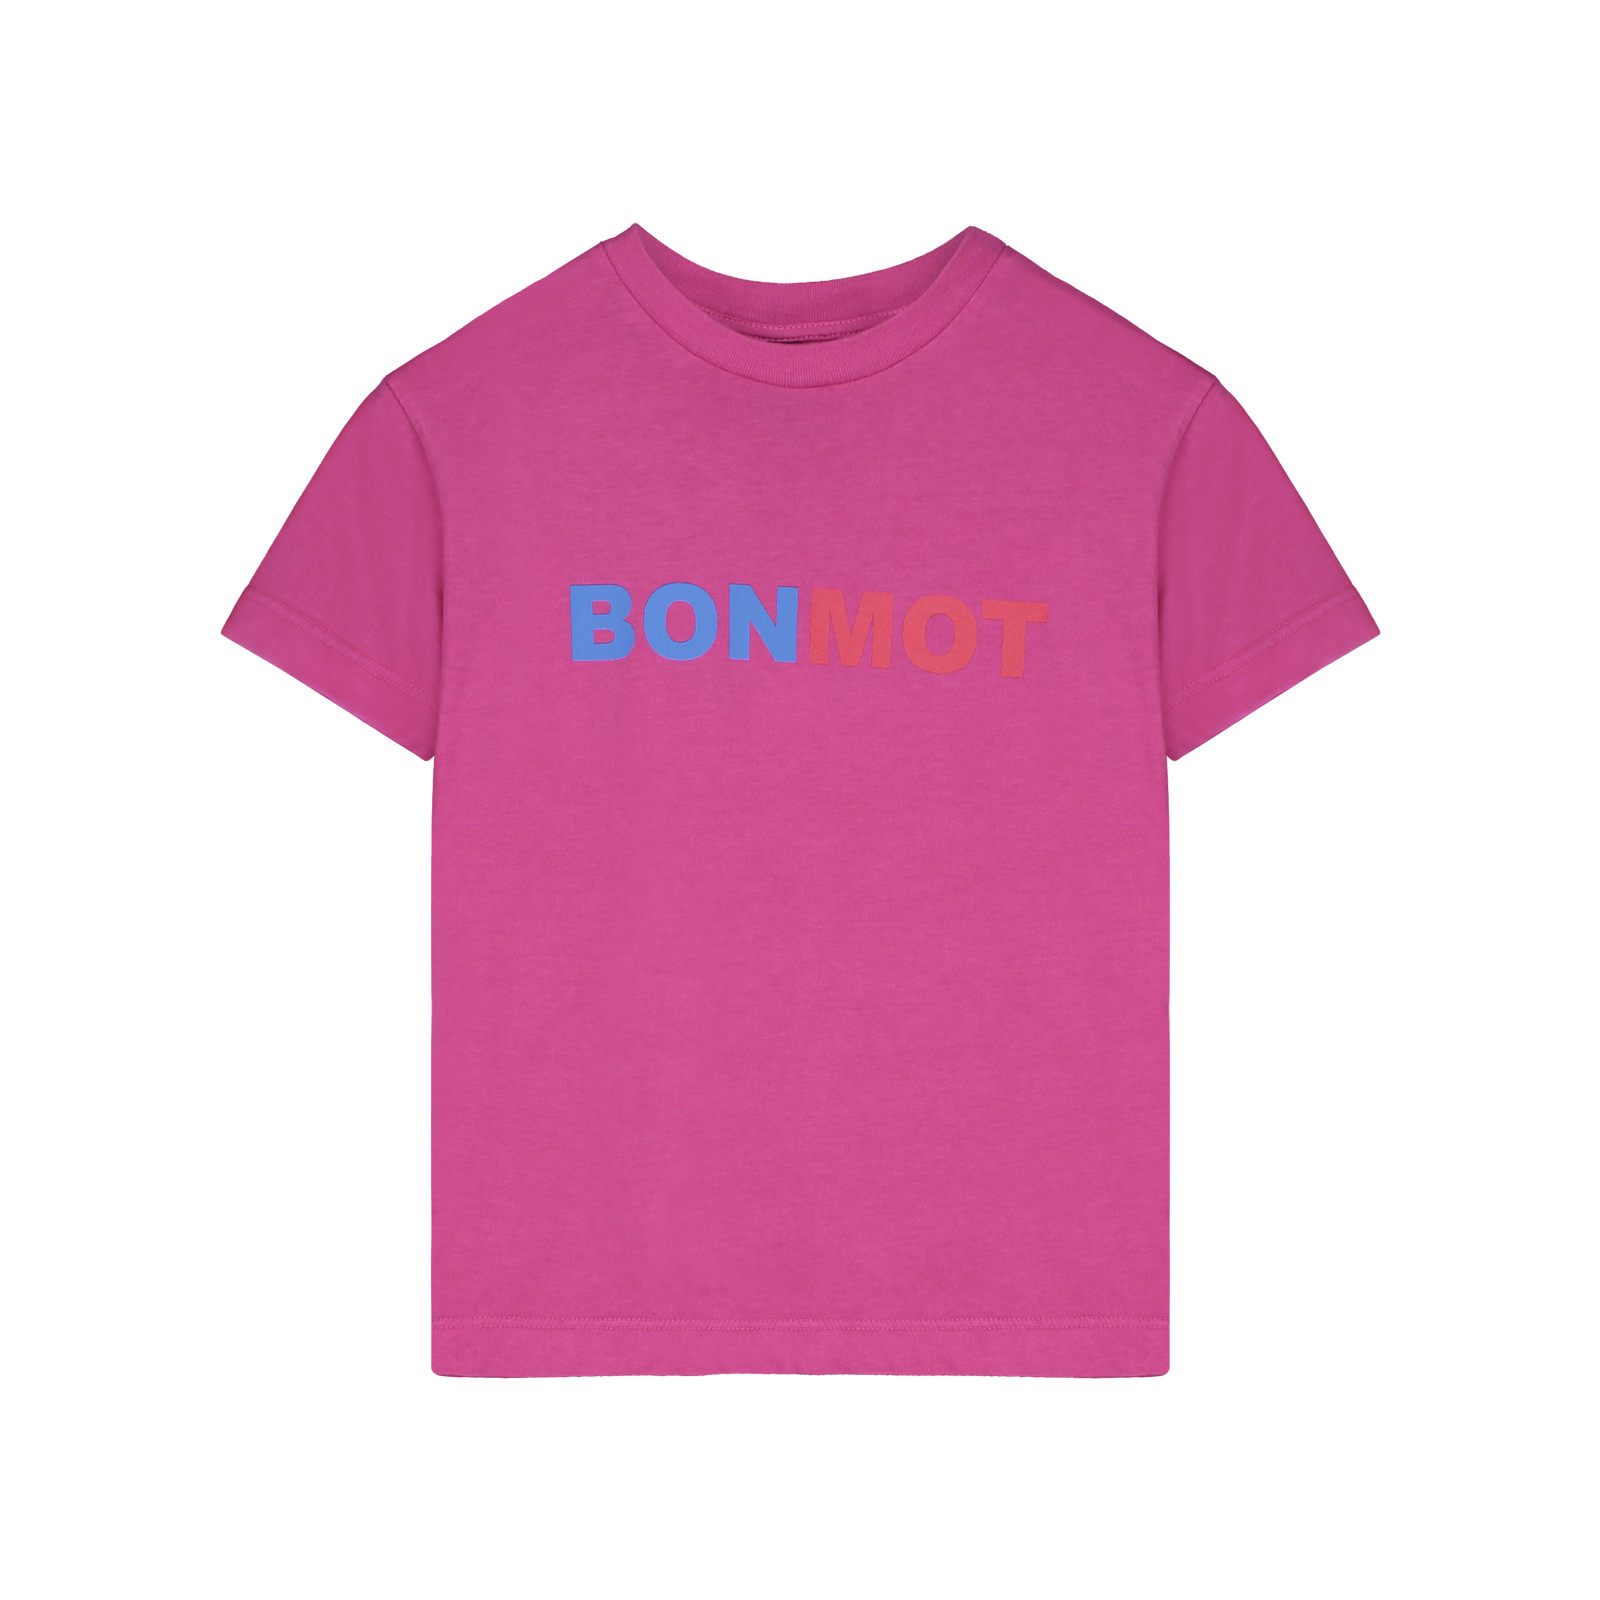 [BONMOT/본못] T-shirt bonmot two colors